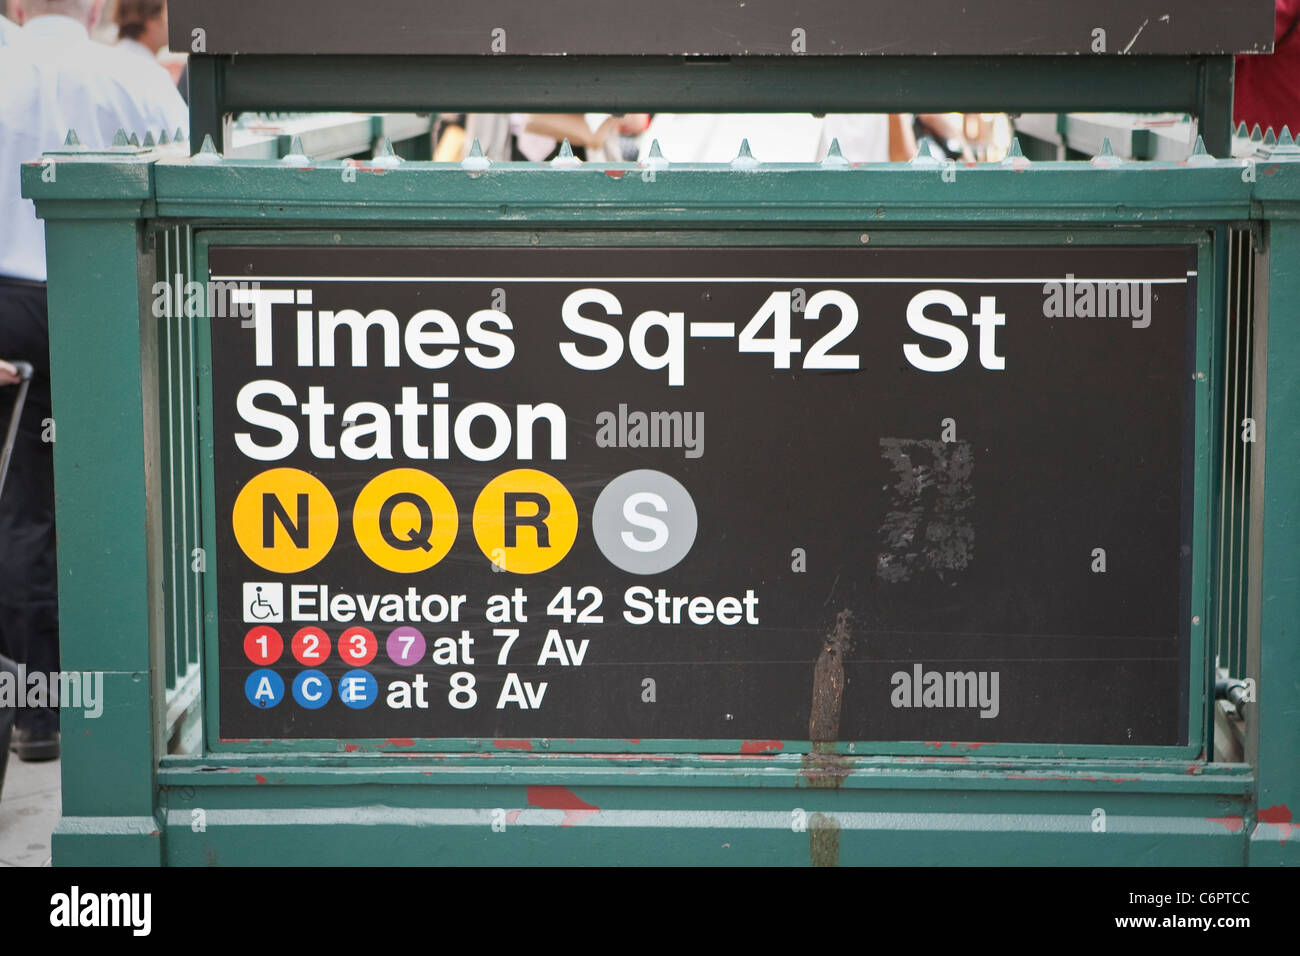 New York Subway Times Sq 42 St Station ist im New Yorker Stadtteil Manhattan, NY, Dienstag, 2. August 2011 abgebildet. Stockfoto